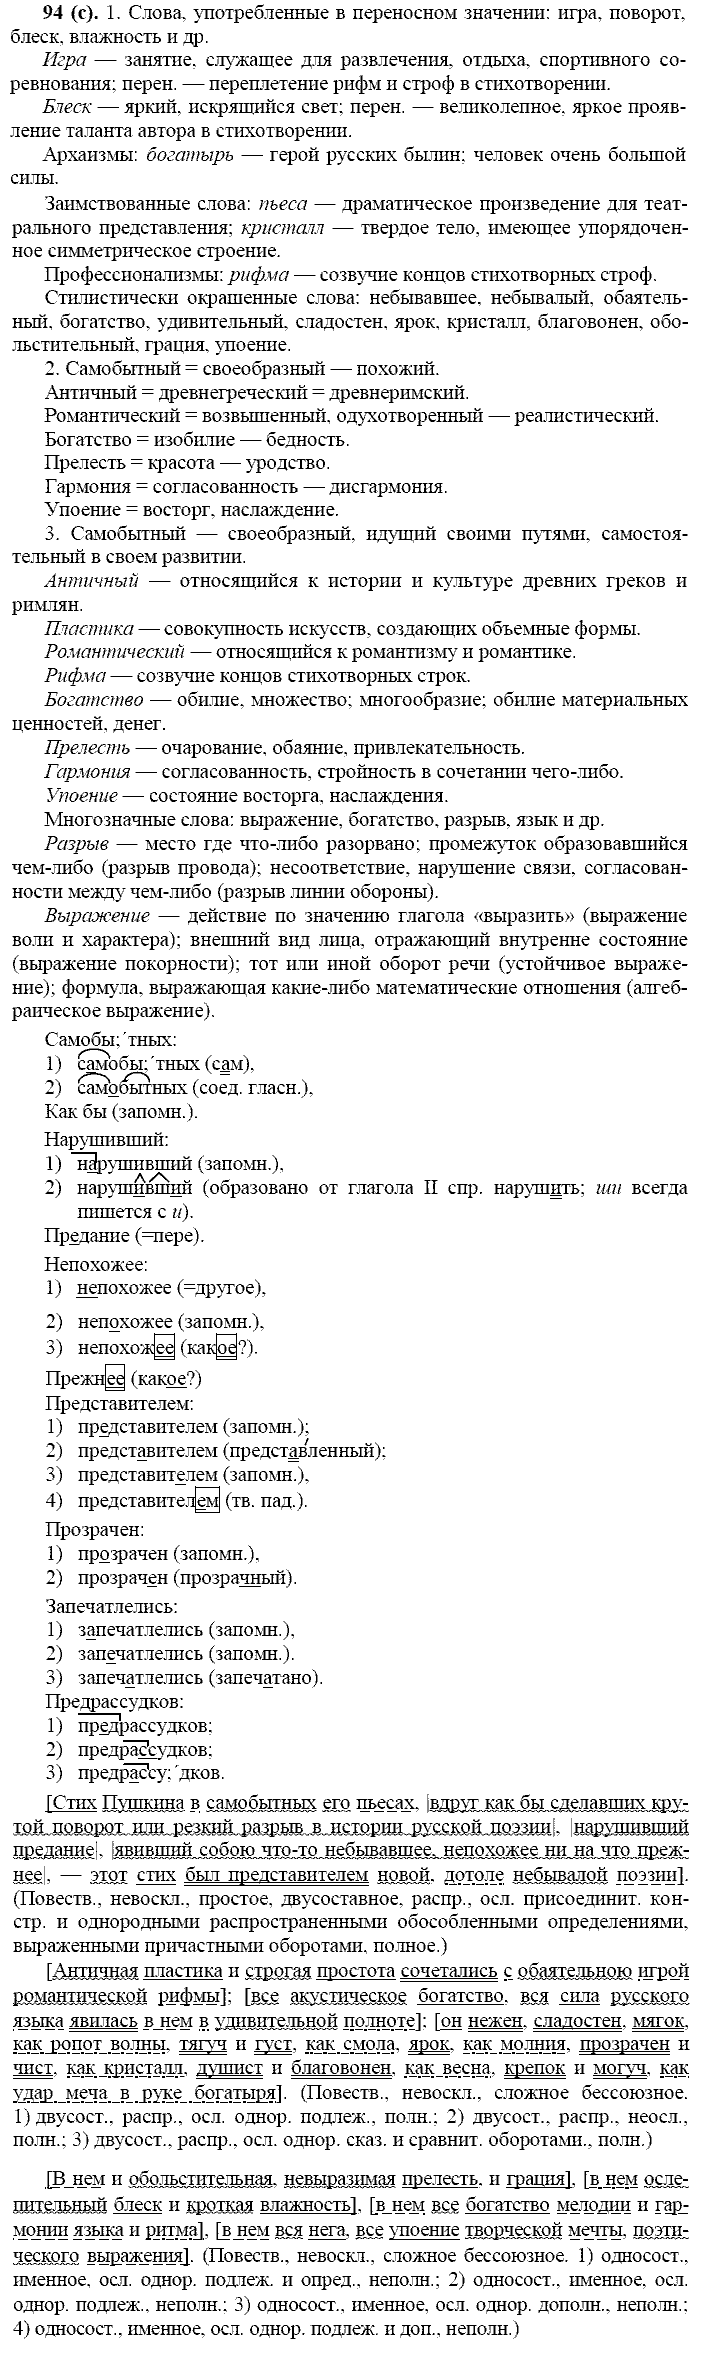 Русский язык, 11 класс, Власенков, Рыбченков, 2009-2014, задание: 94 (с)